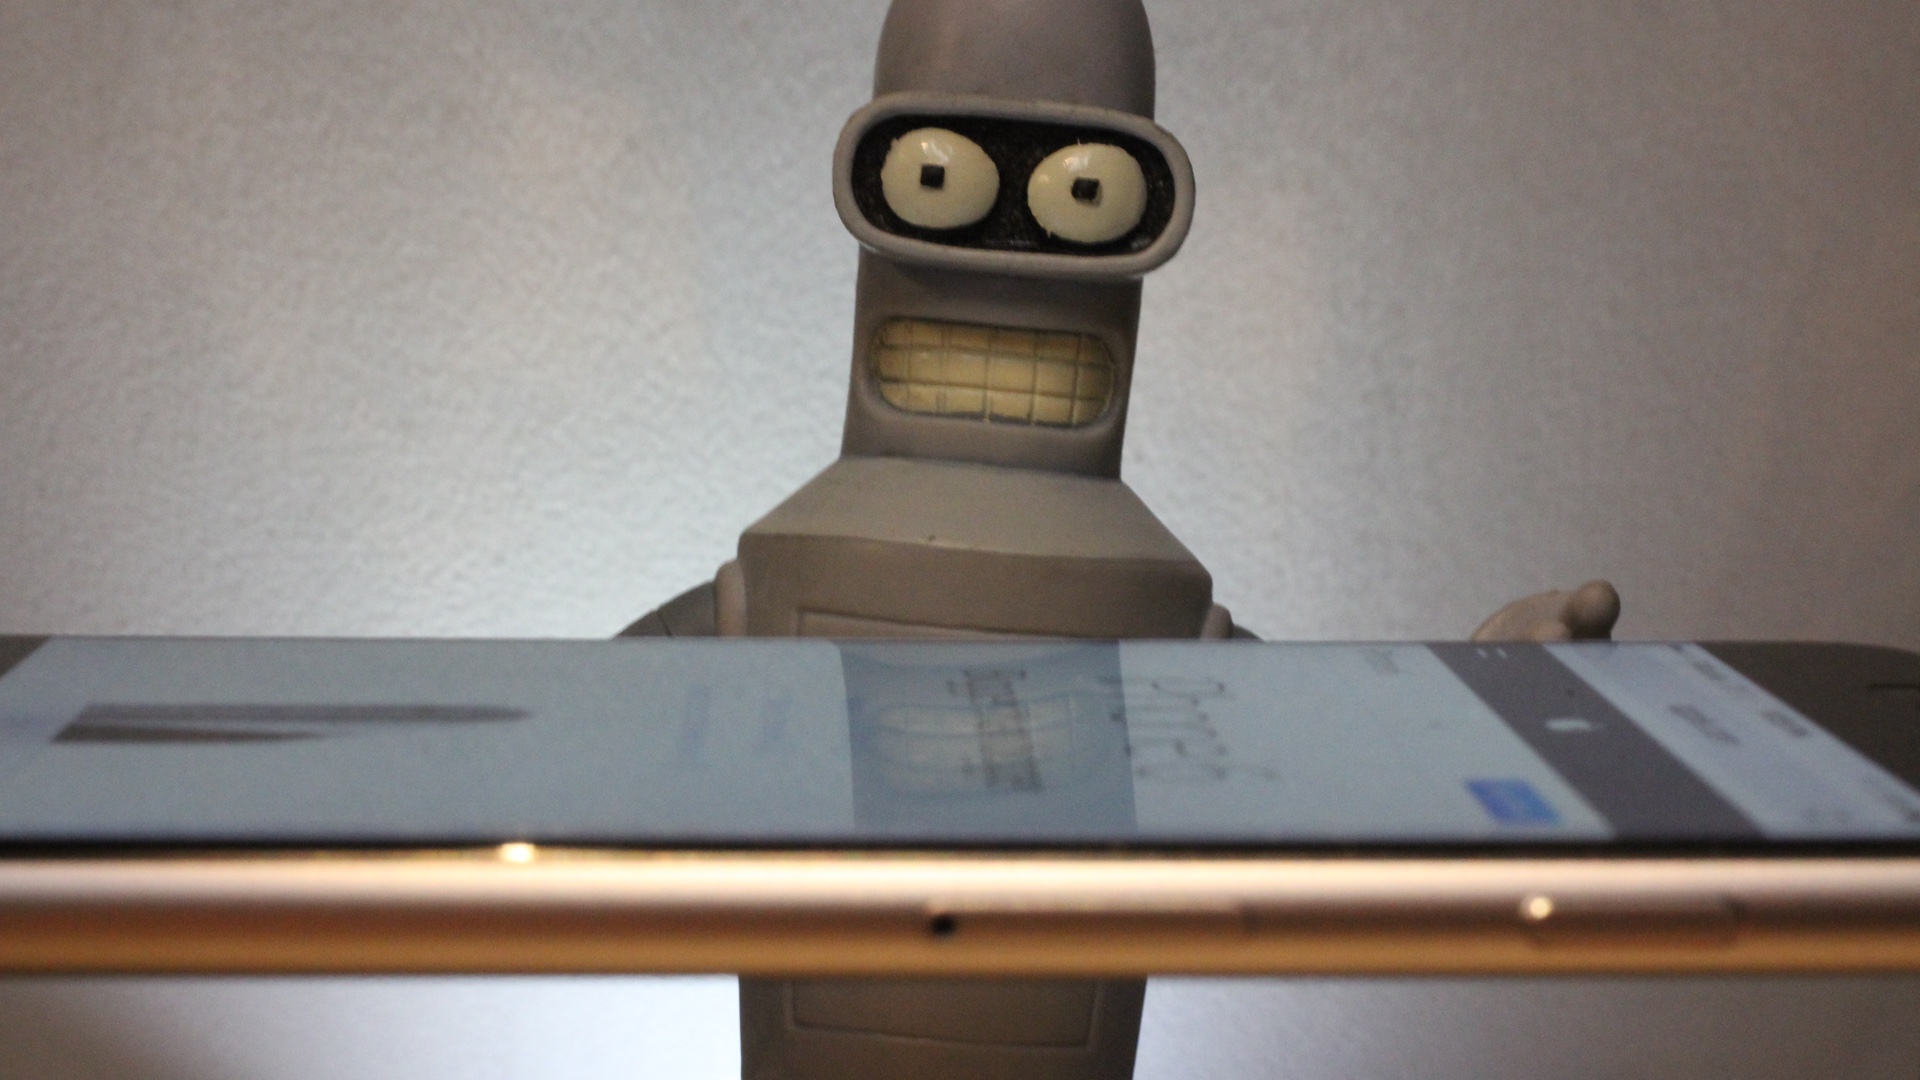 Bender performing Bending Test on iPhone 6